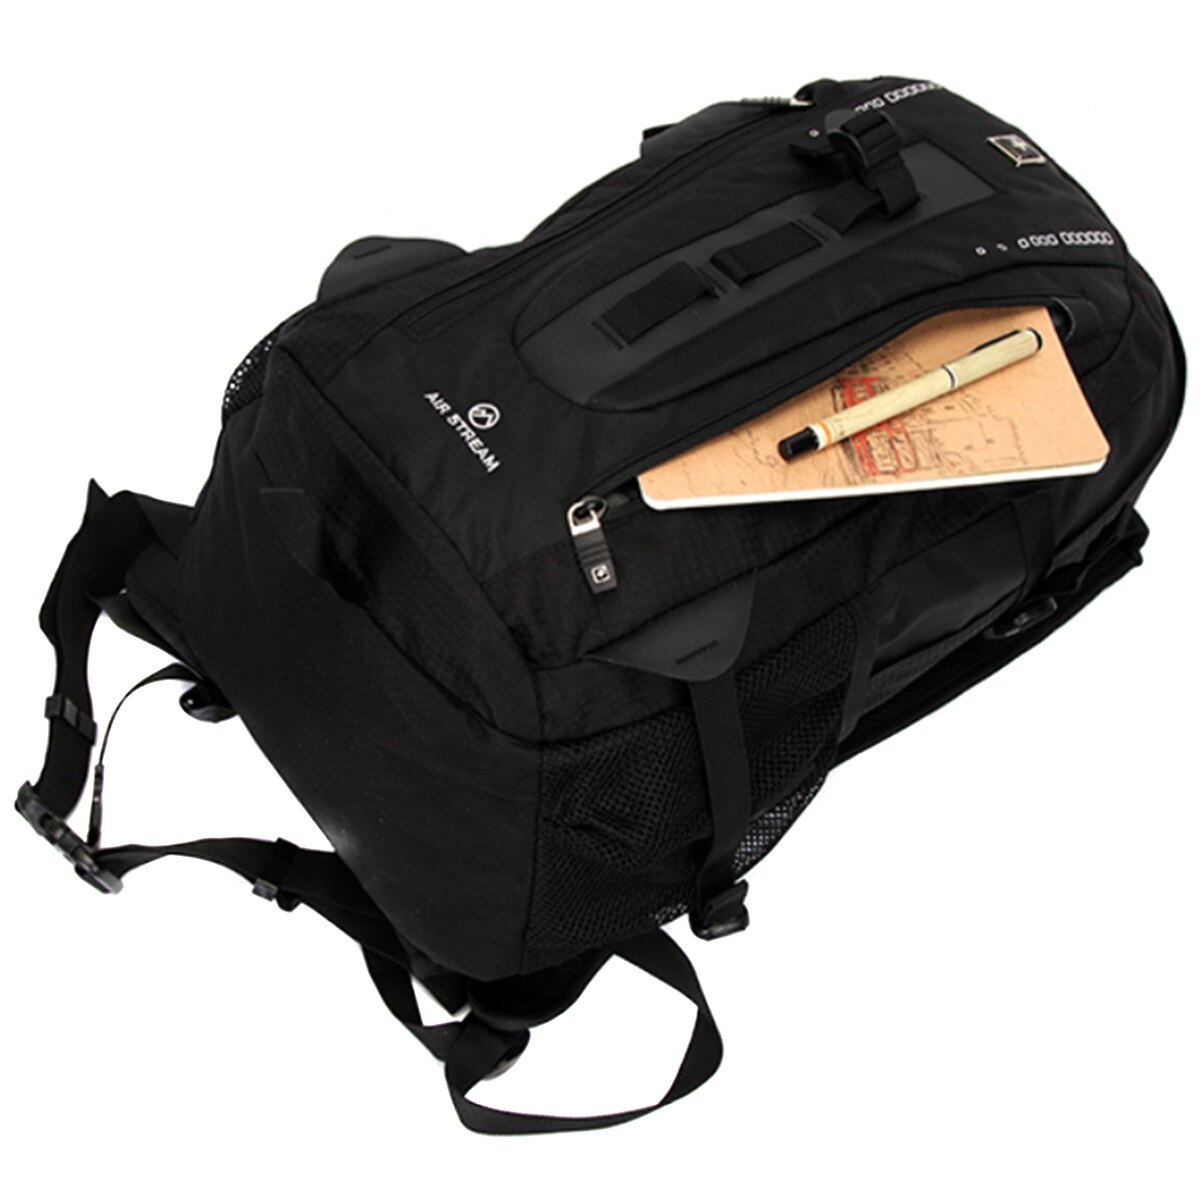 Swisswin Laptop Backpack SWE9972 - Black